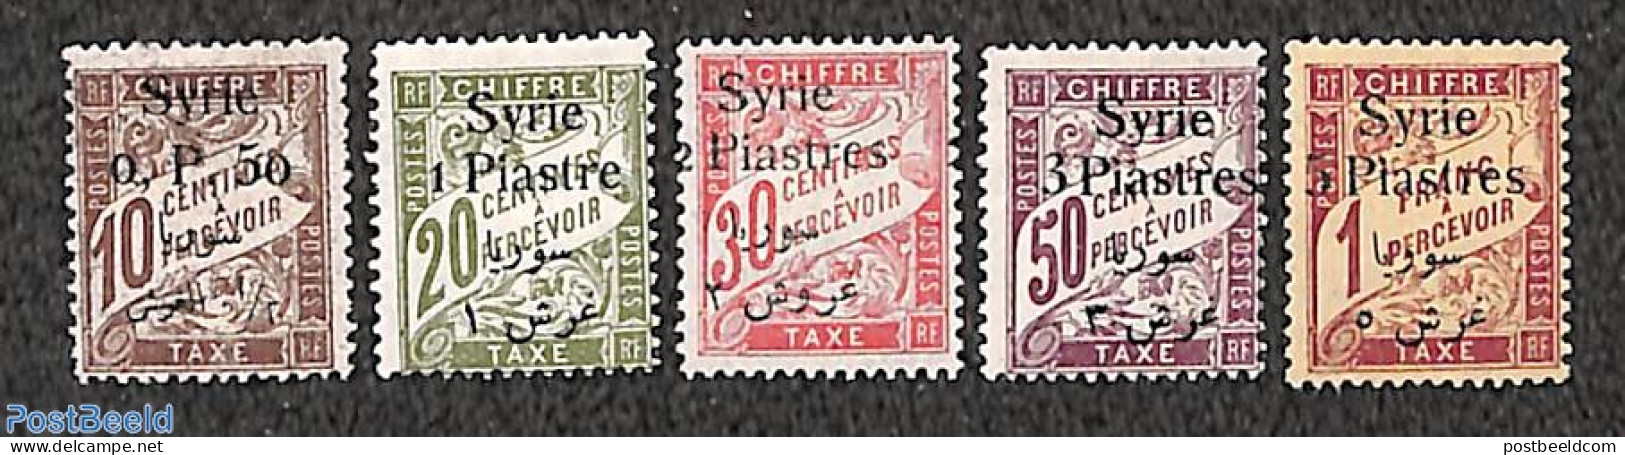 Syria 1924 Postage Due 5v, Unused (hinged) - Syrien